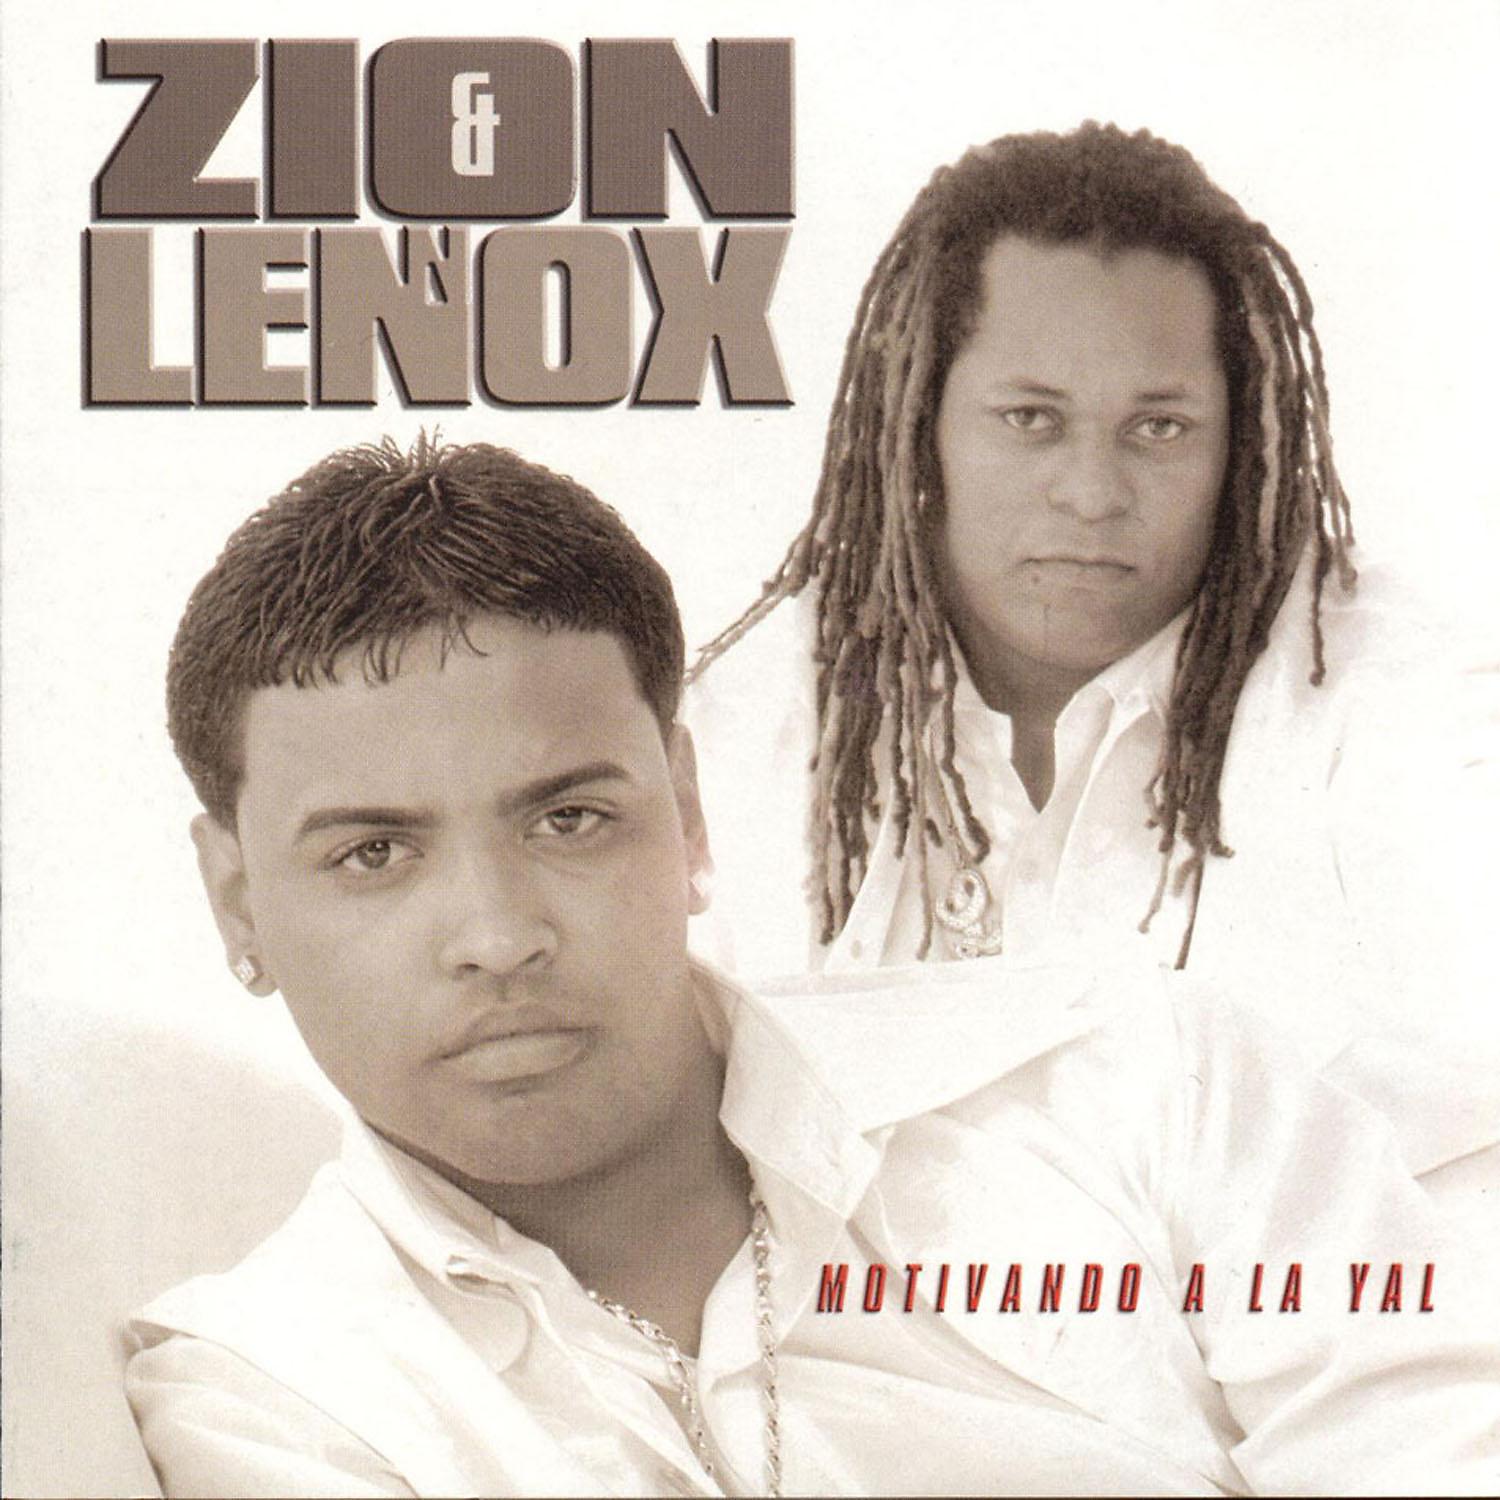 Zion & Lennox. Zion y Lennox, Daddy Yankee. Motivando a la Yal Zion y Lennox. Daddy Yankee album Cover.